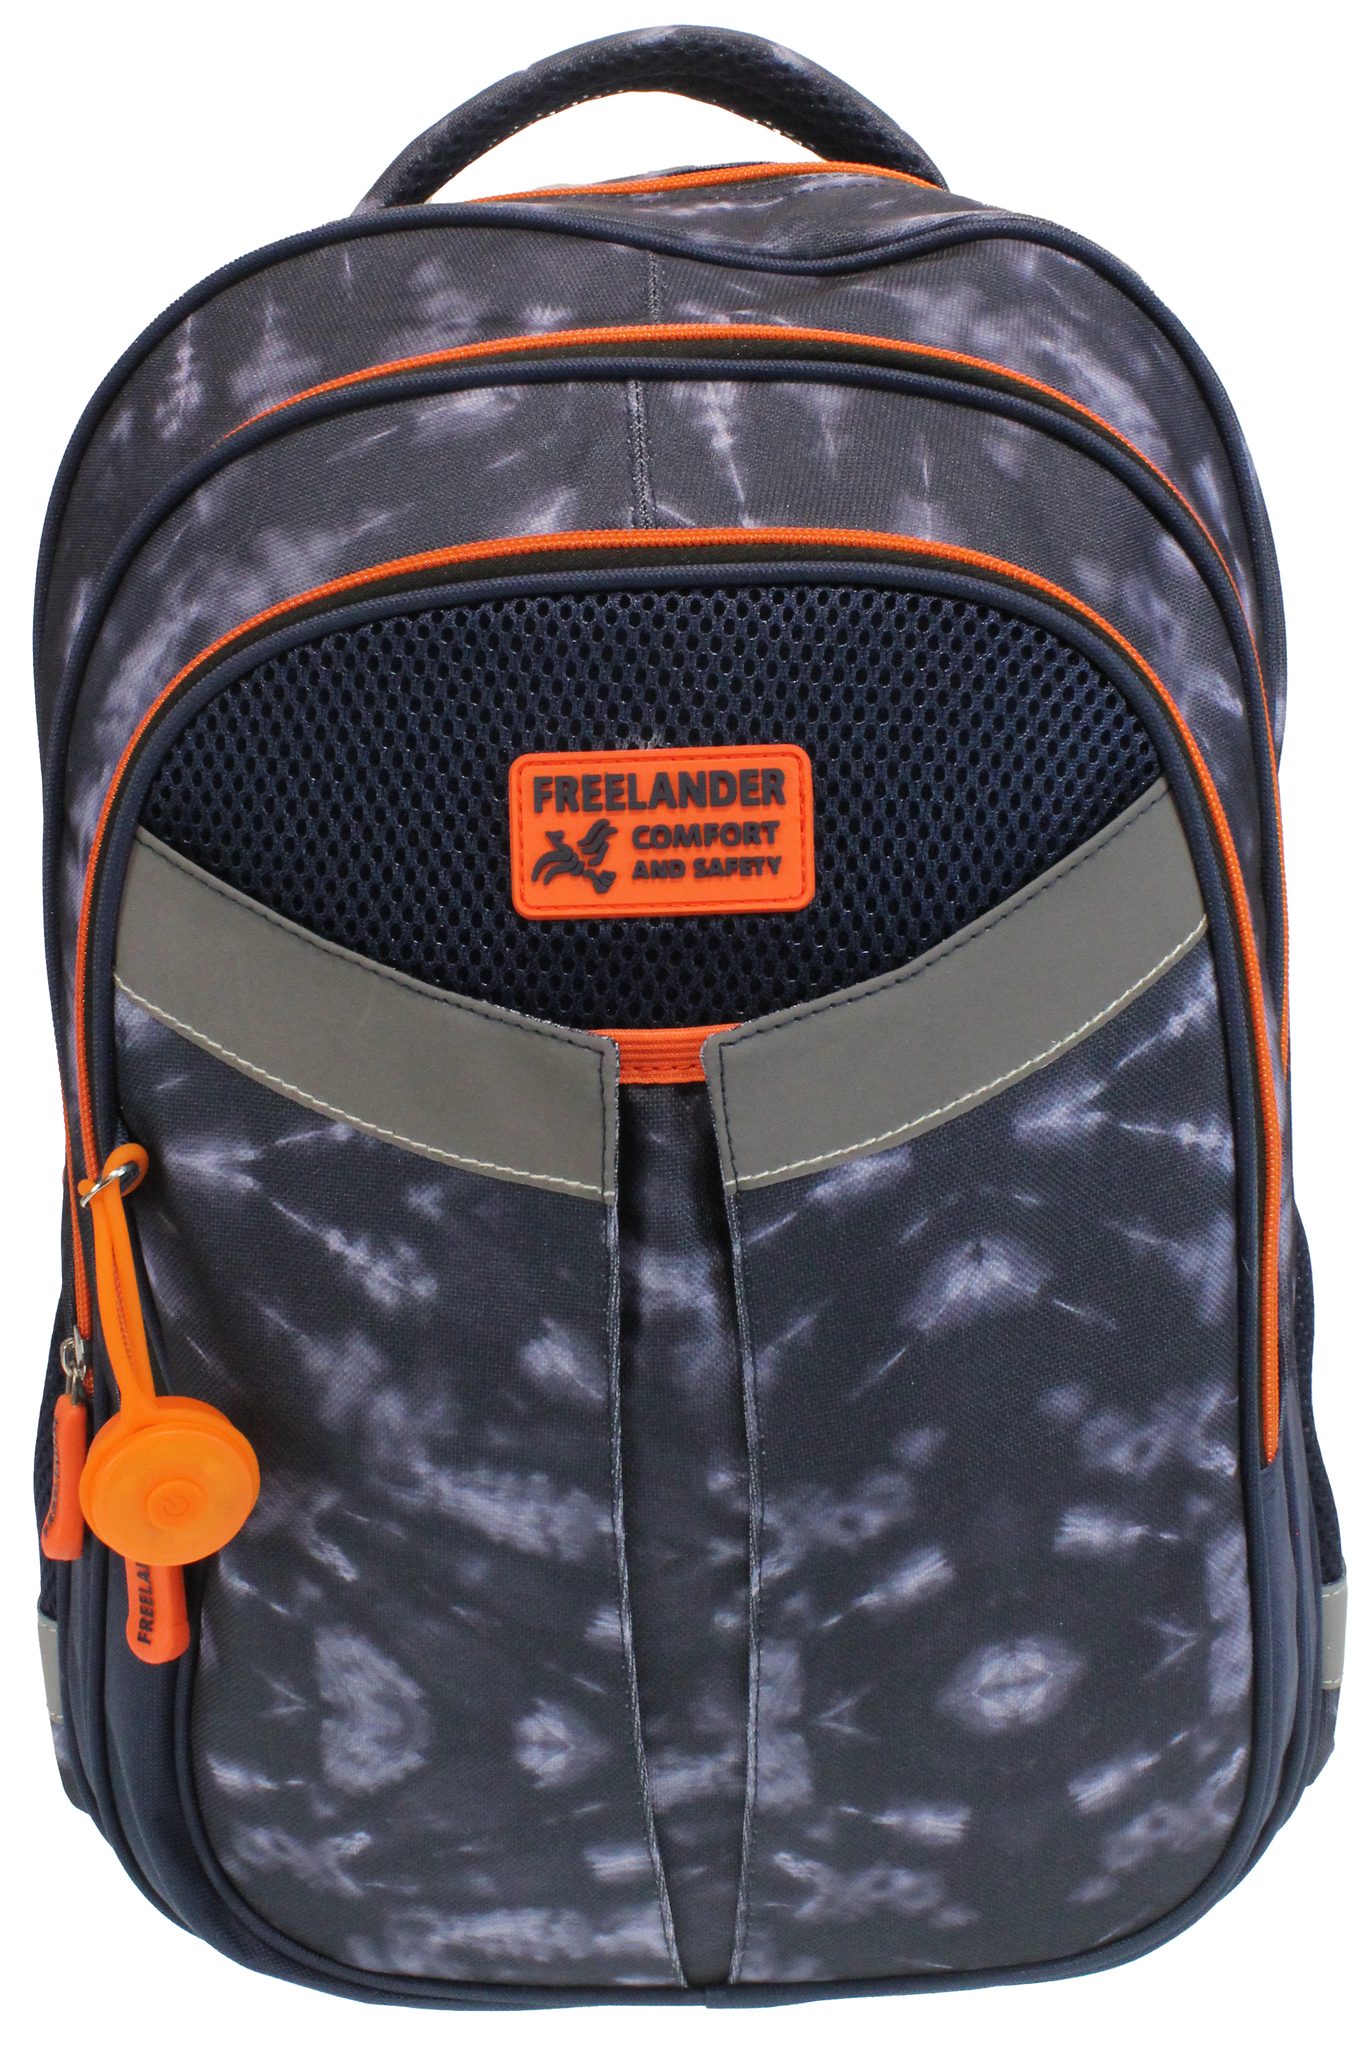 Freelander Comfort & Safety Boys Backpack 34F332